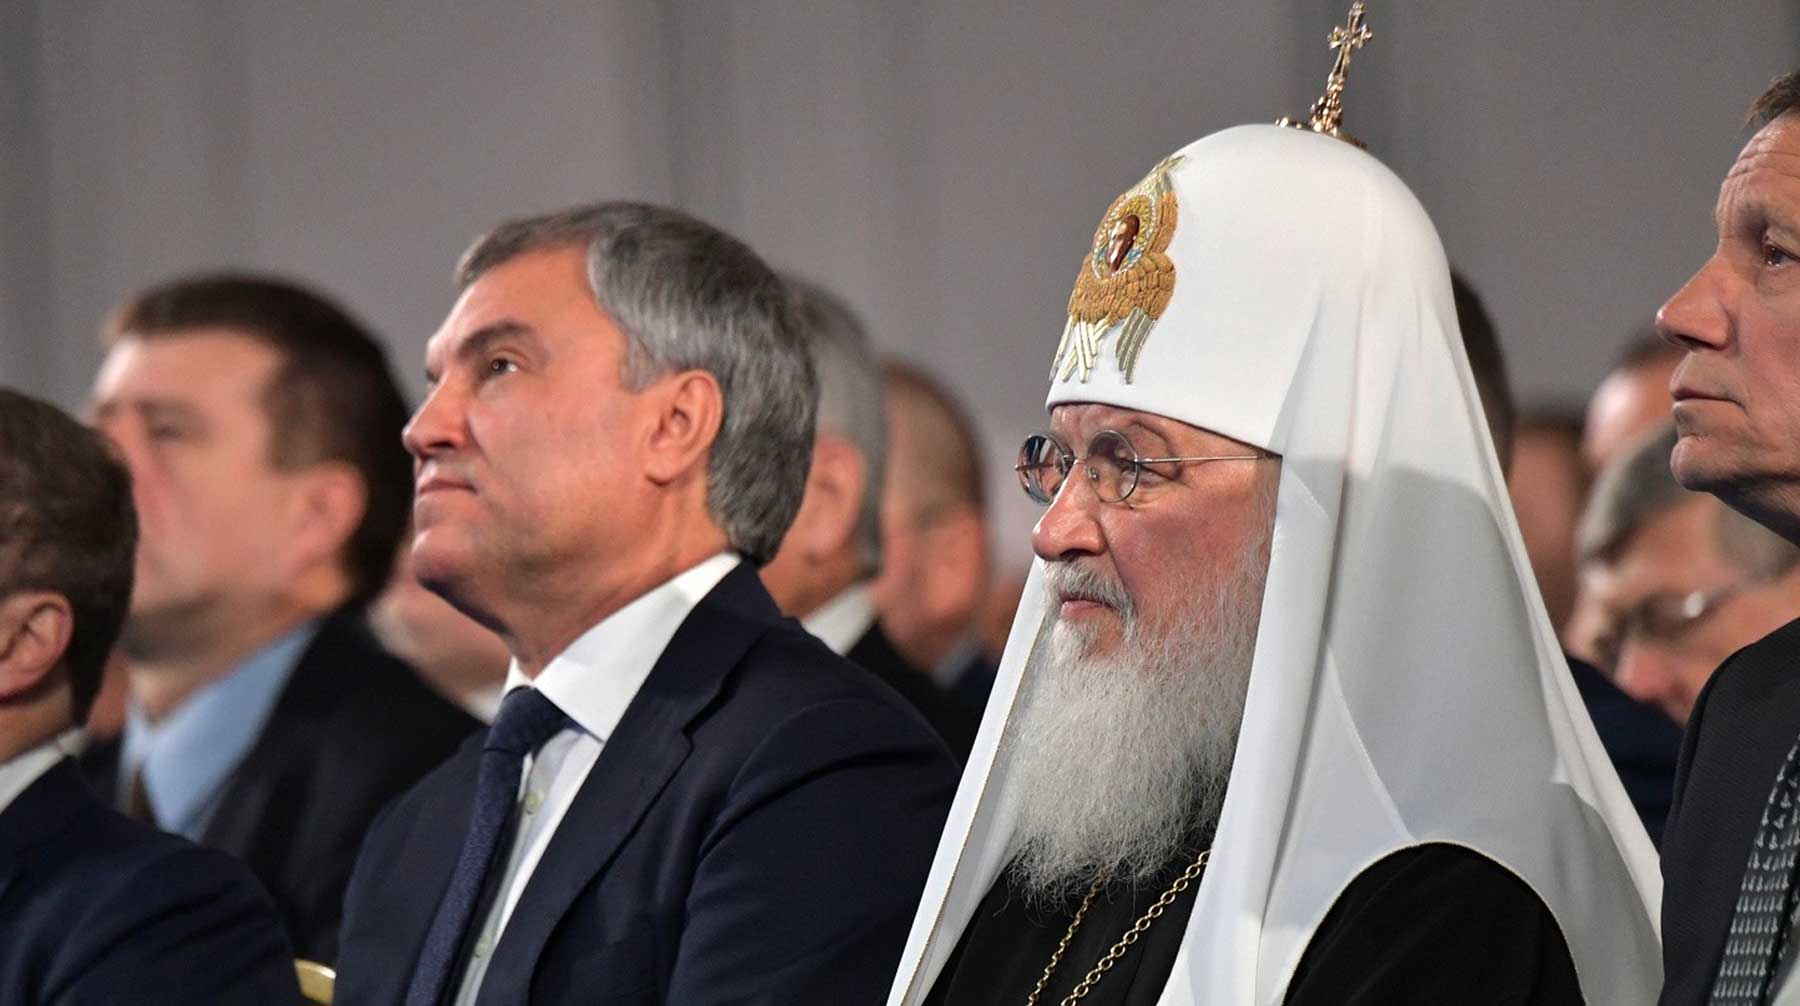 Спикер Госдумы отметил влияние главы РПЦ на роль веры в обществе Фото: © GLOBAL LOOK press / Kremlin Pool